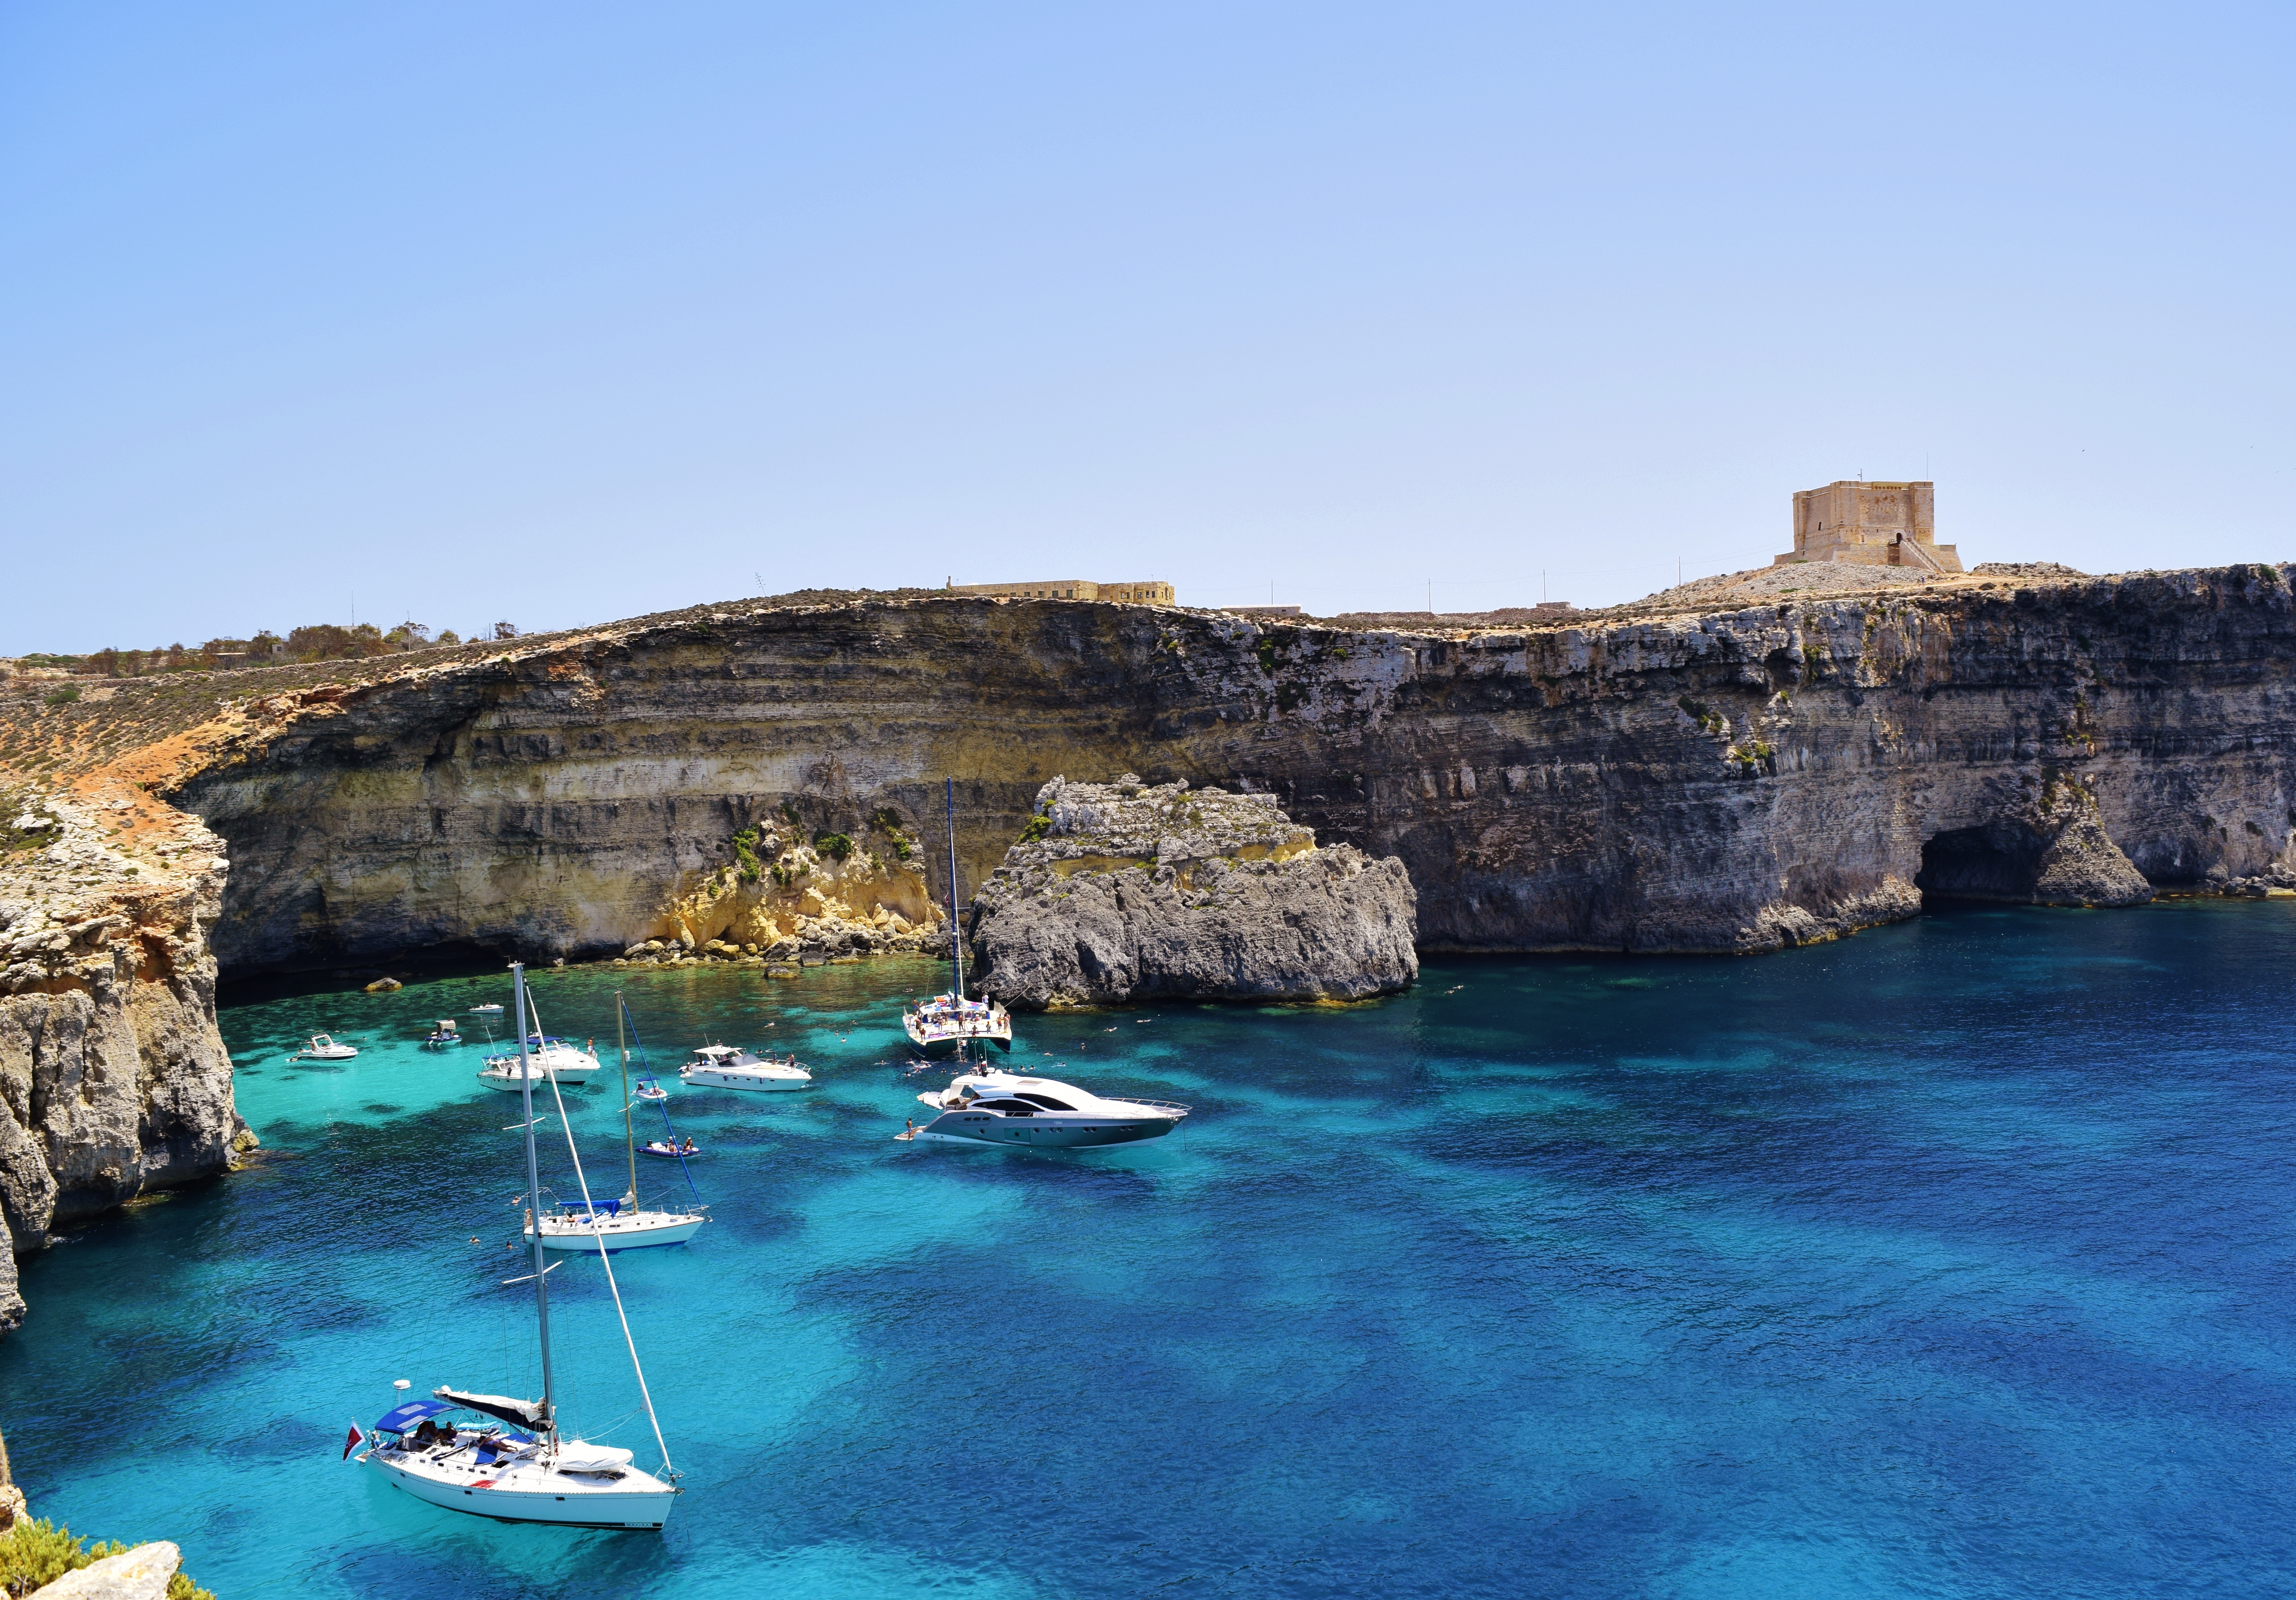 Island of Comino right off the coast of Malta.